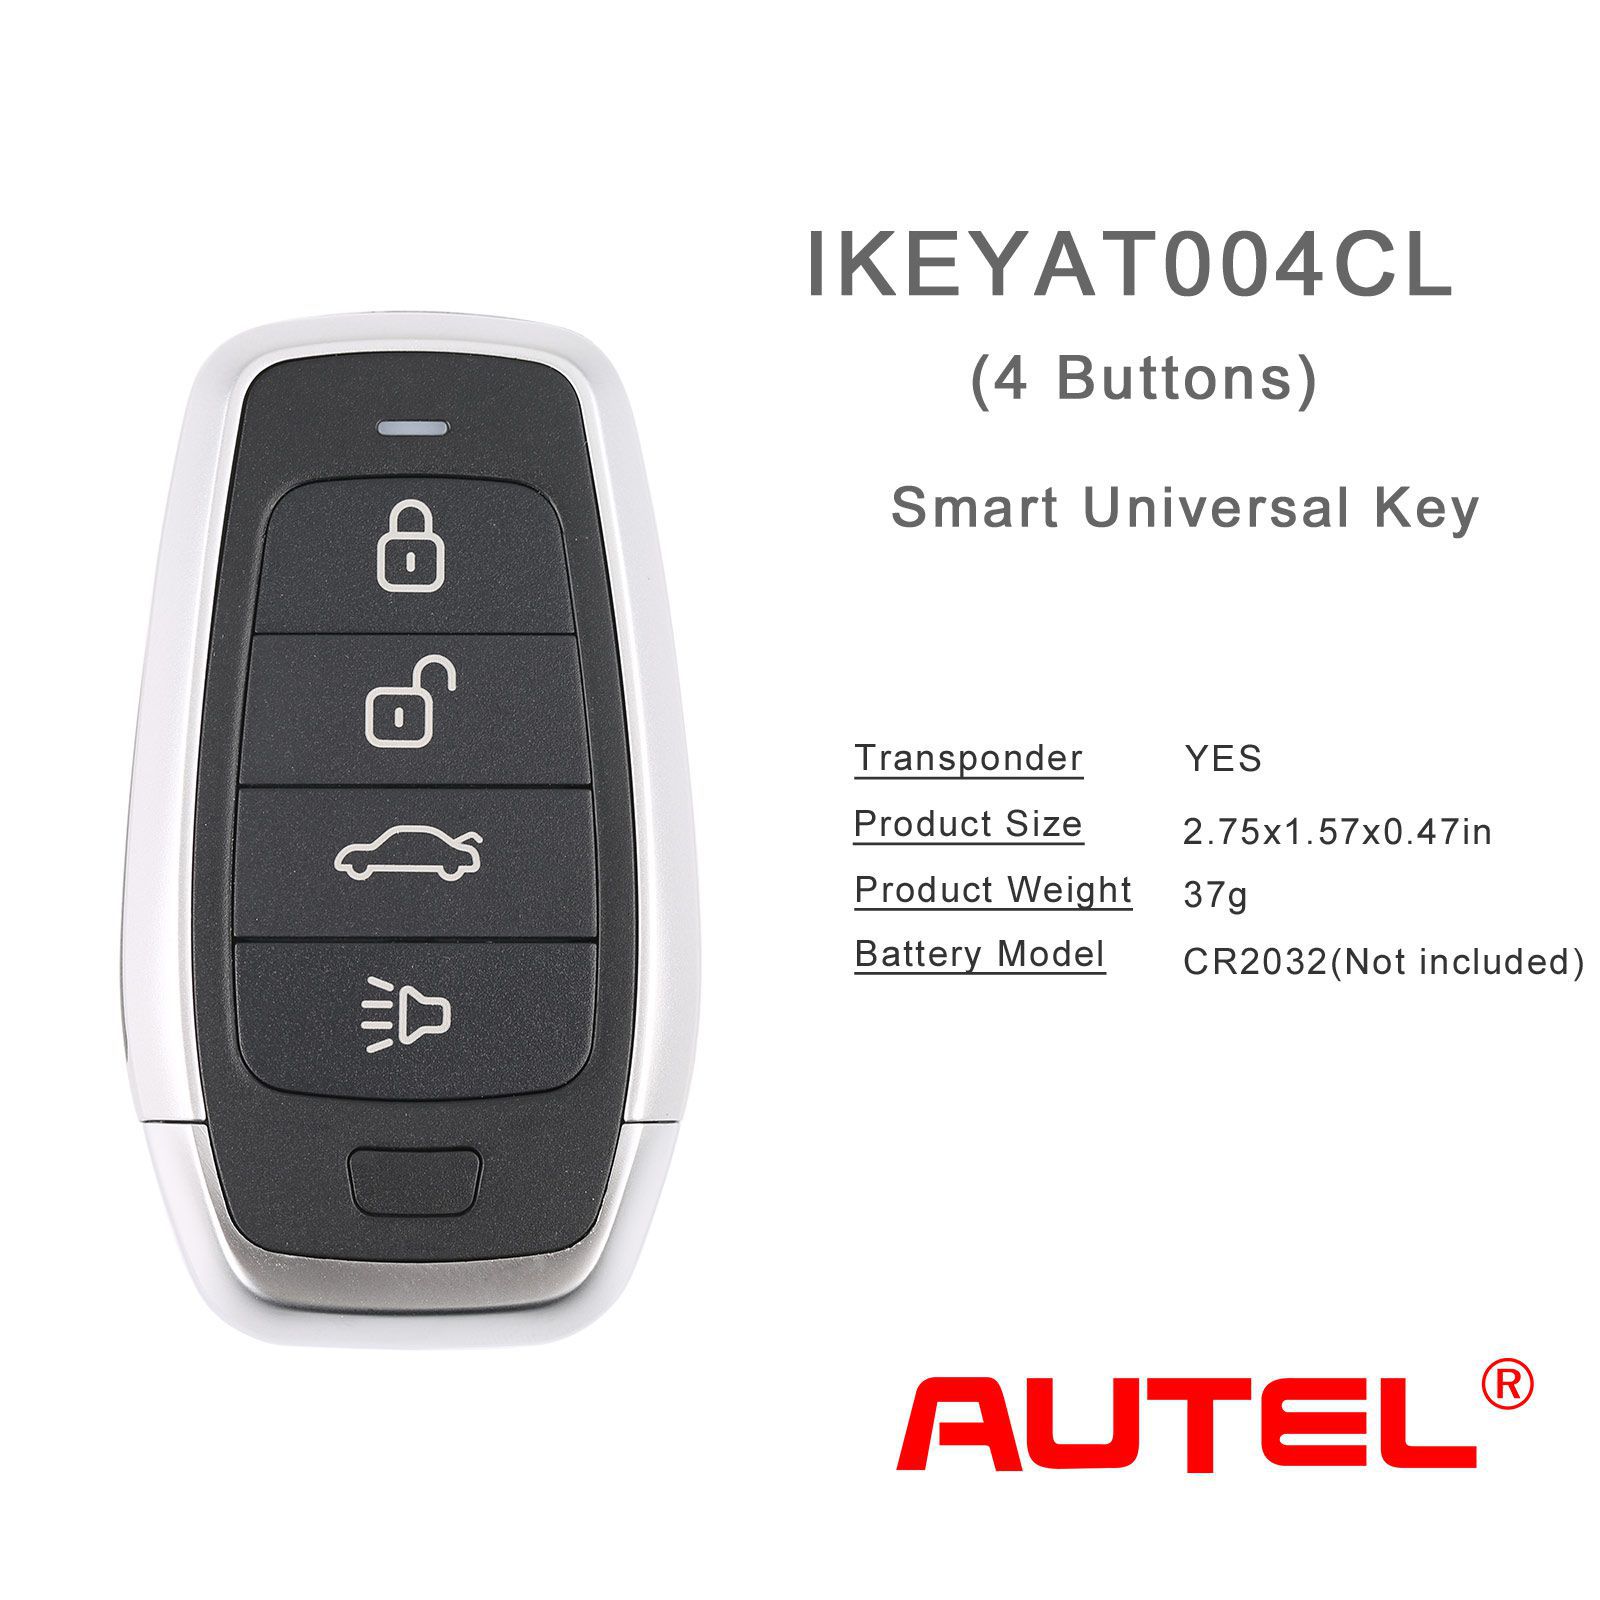 Autel ikeyat004cl 4 boutons clés intelligentes universelles indépendantes 5pcs / lot